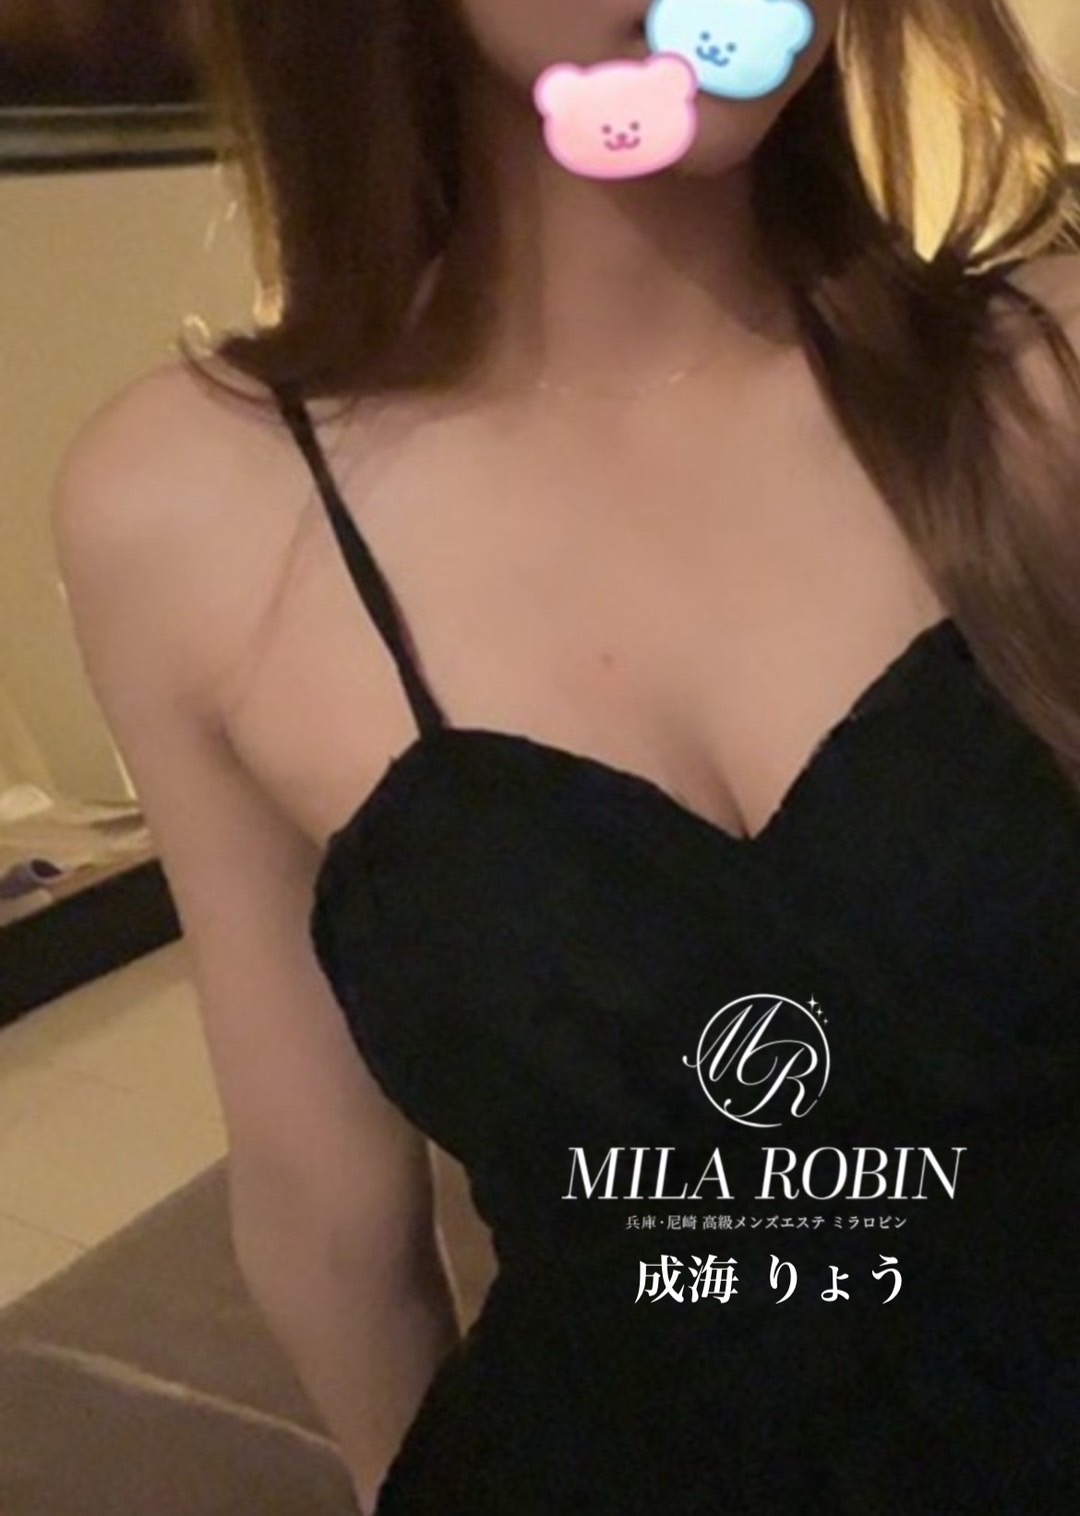 Mila Robin (ミラロビン) 成海りょう